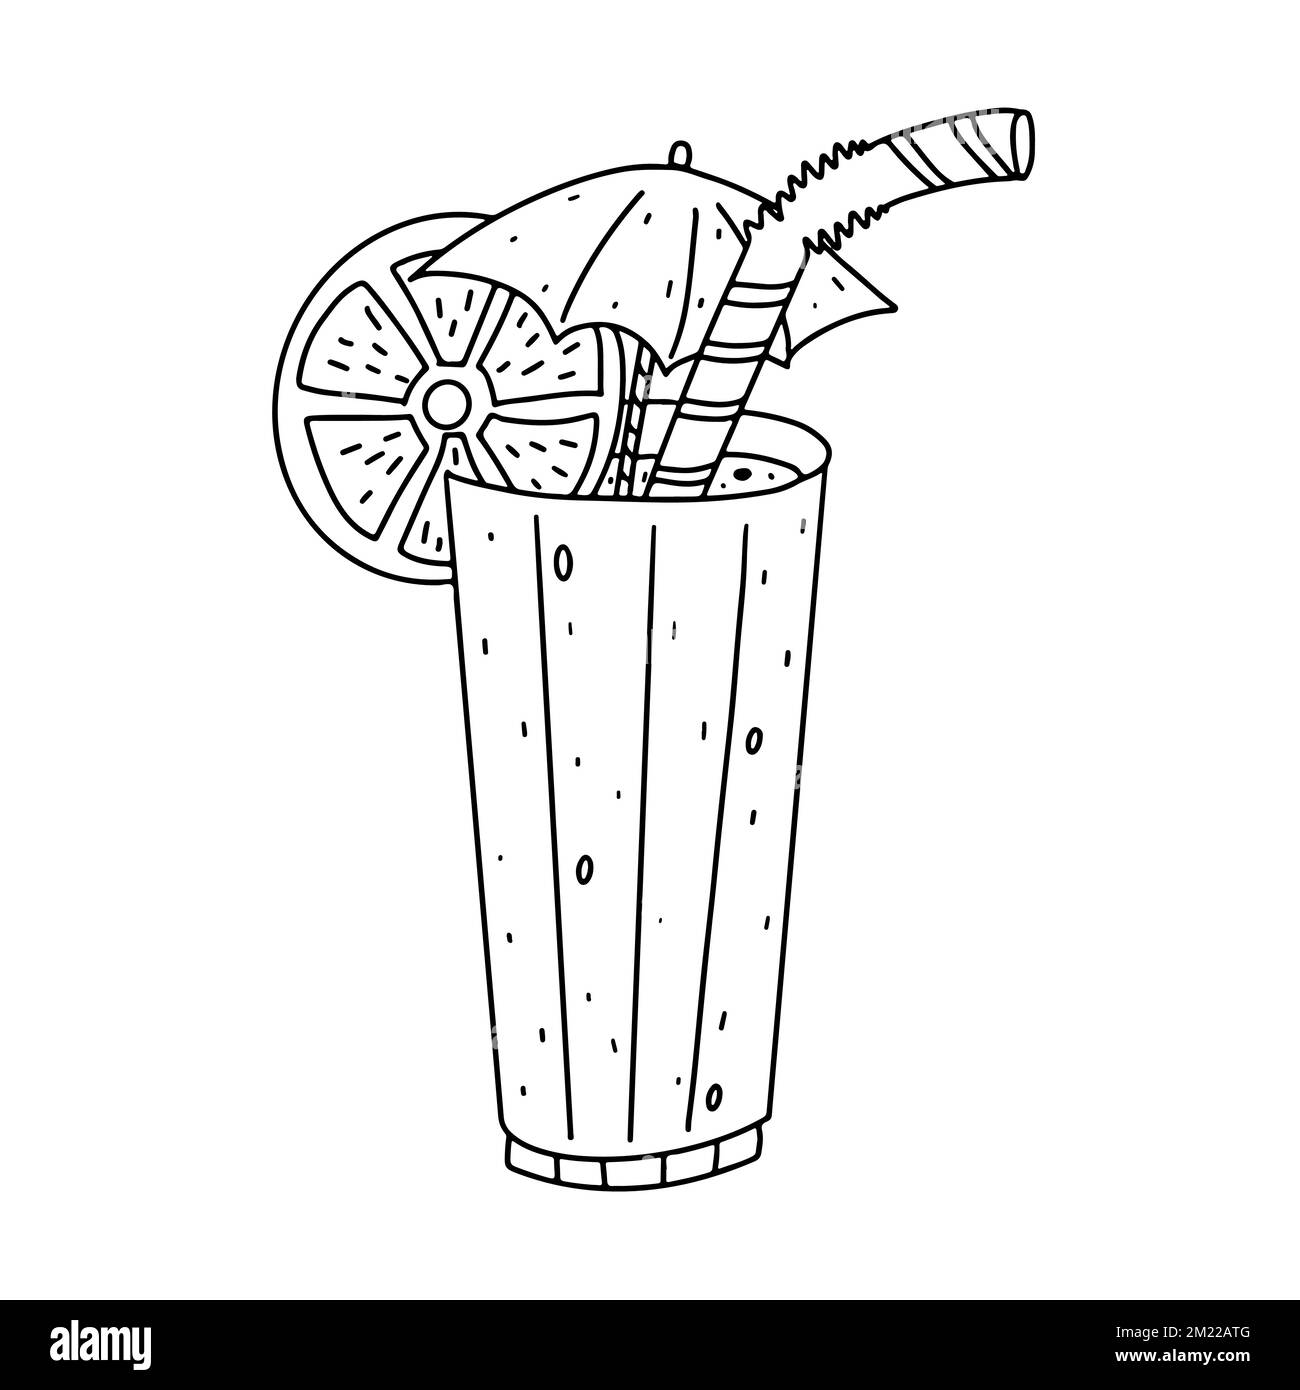 Panela bere in stile doodle disegnata a mano. Bevanda fredda prodotta in Colombia. Illustrazione vettoriale Illustrazione Vettoriale